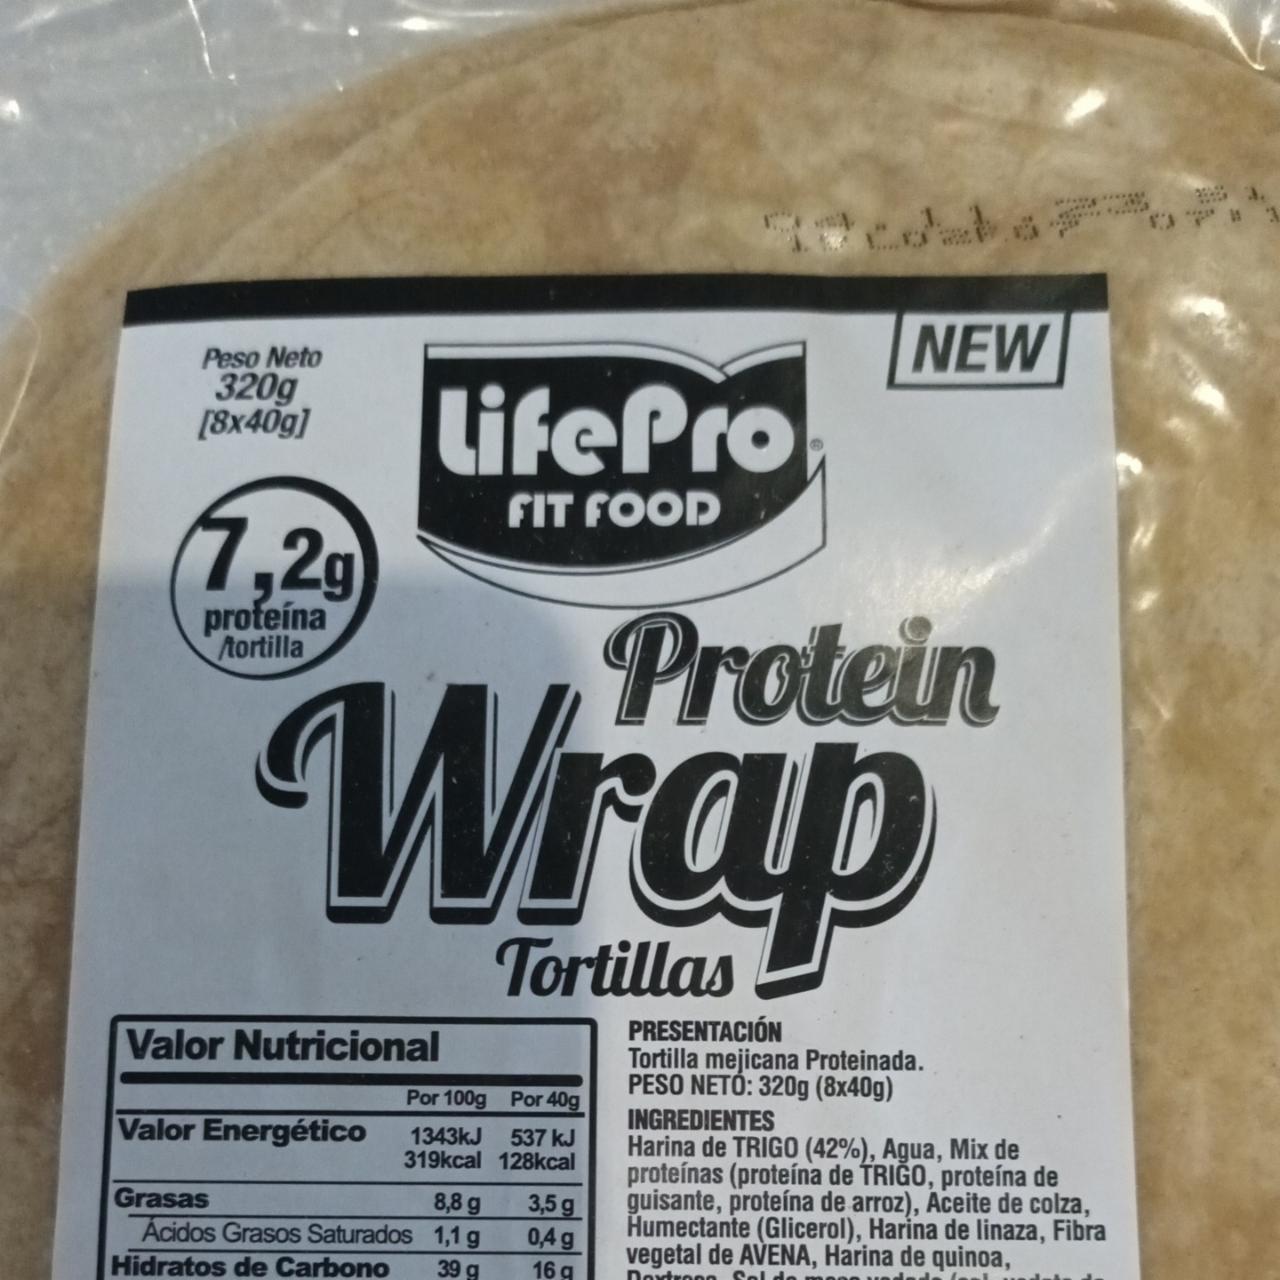 Fotografie - protein Wrap torttilas LifePro Fitfood